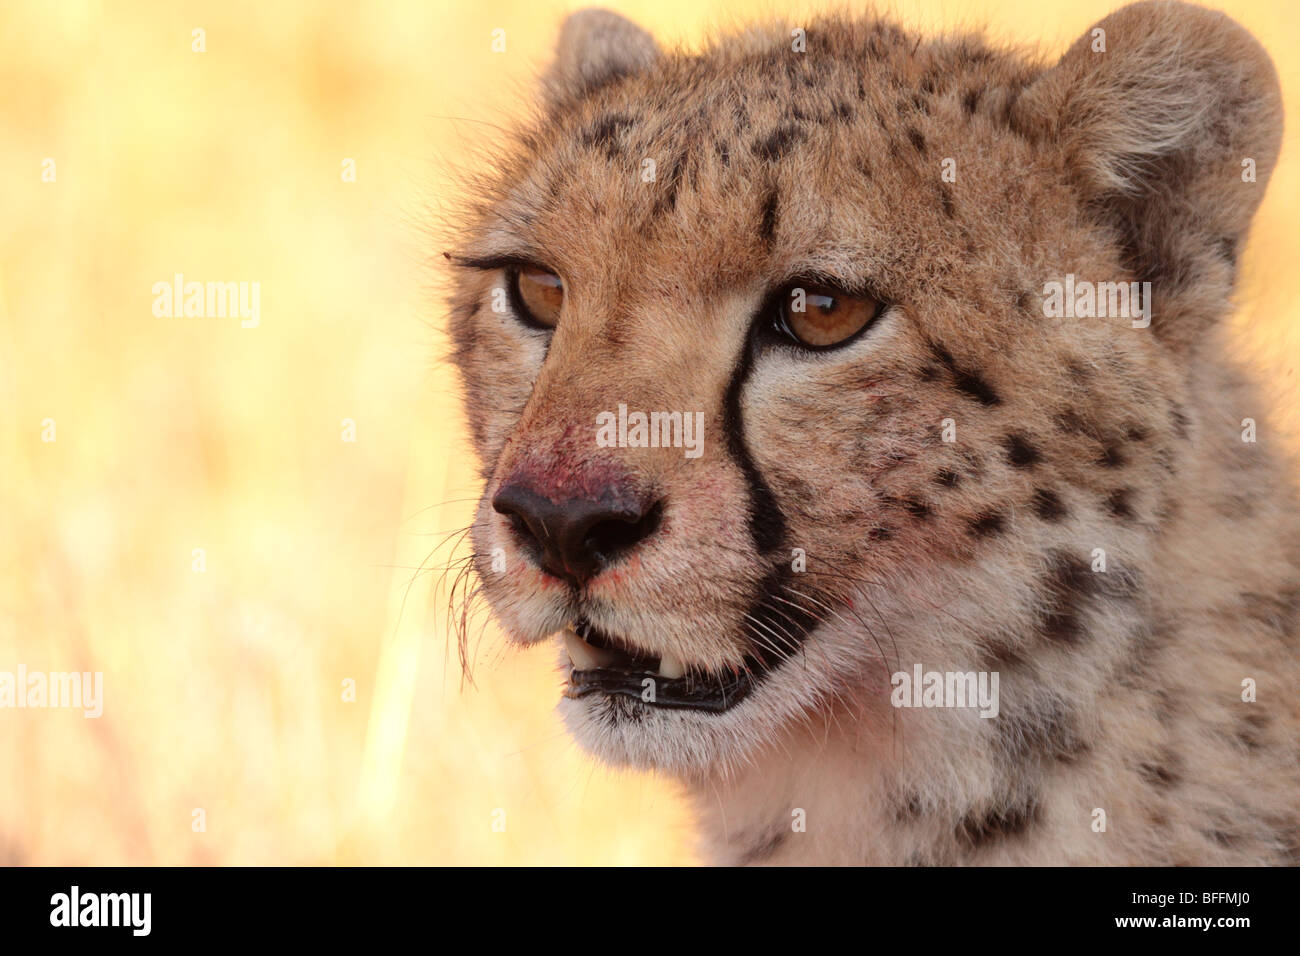 cheetah Acinonyx jubatus in Masai Mara Kenya Stock Photo